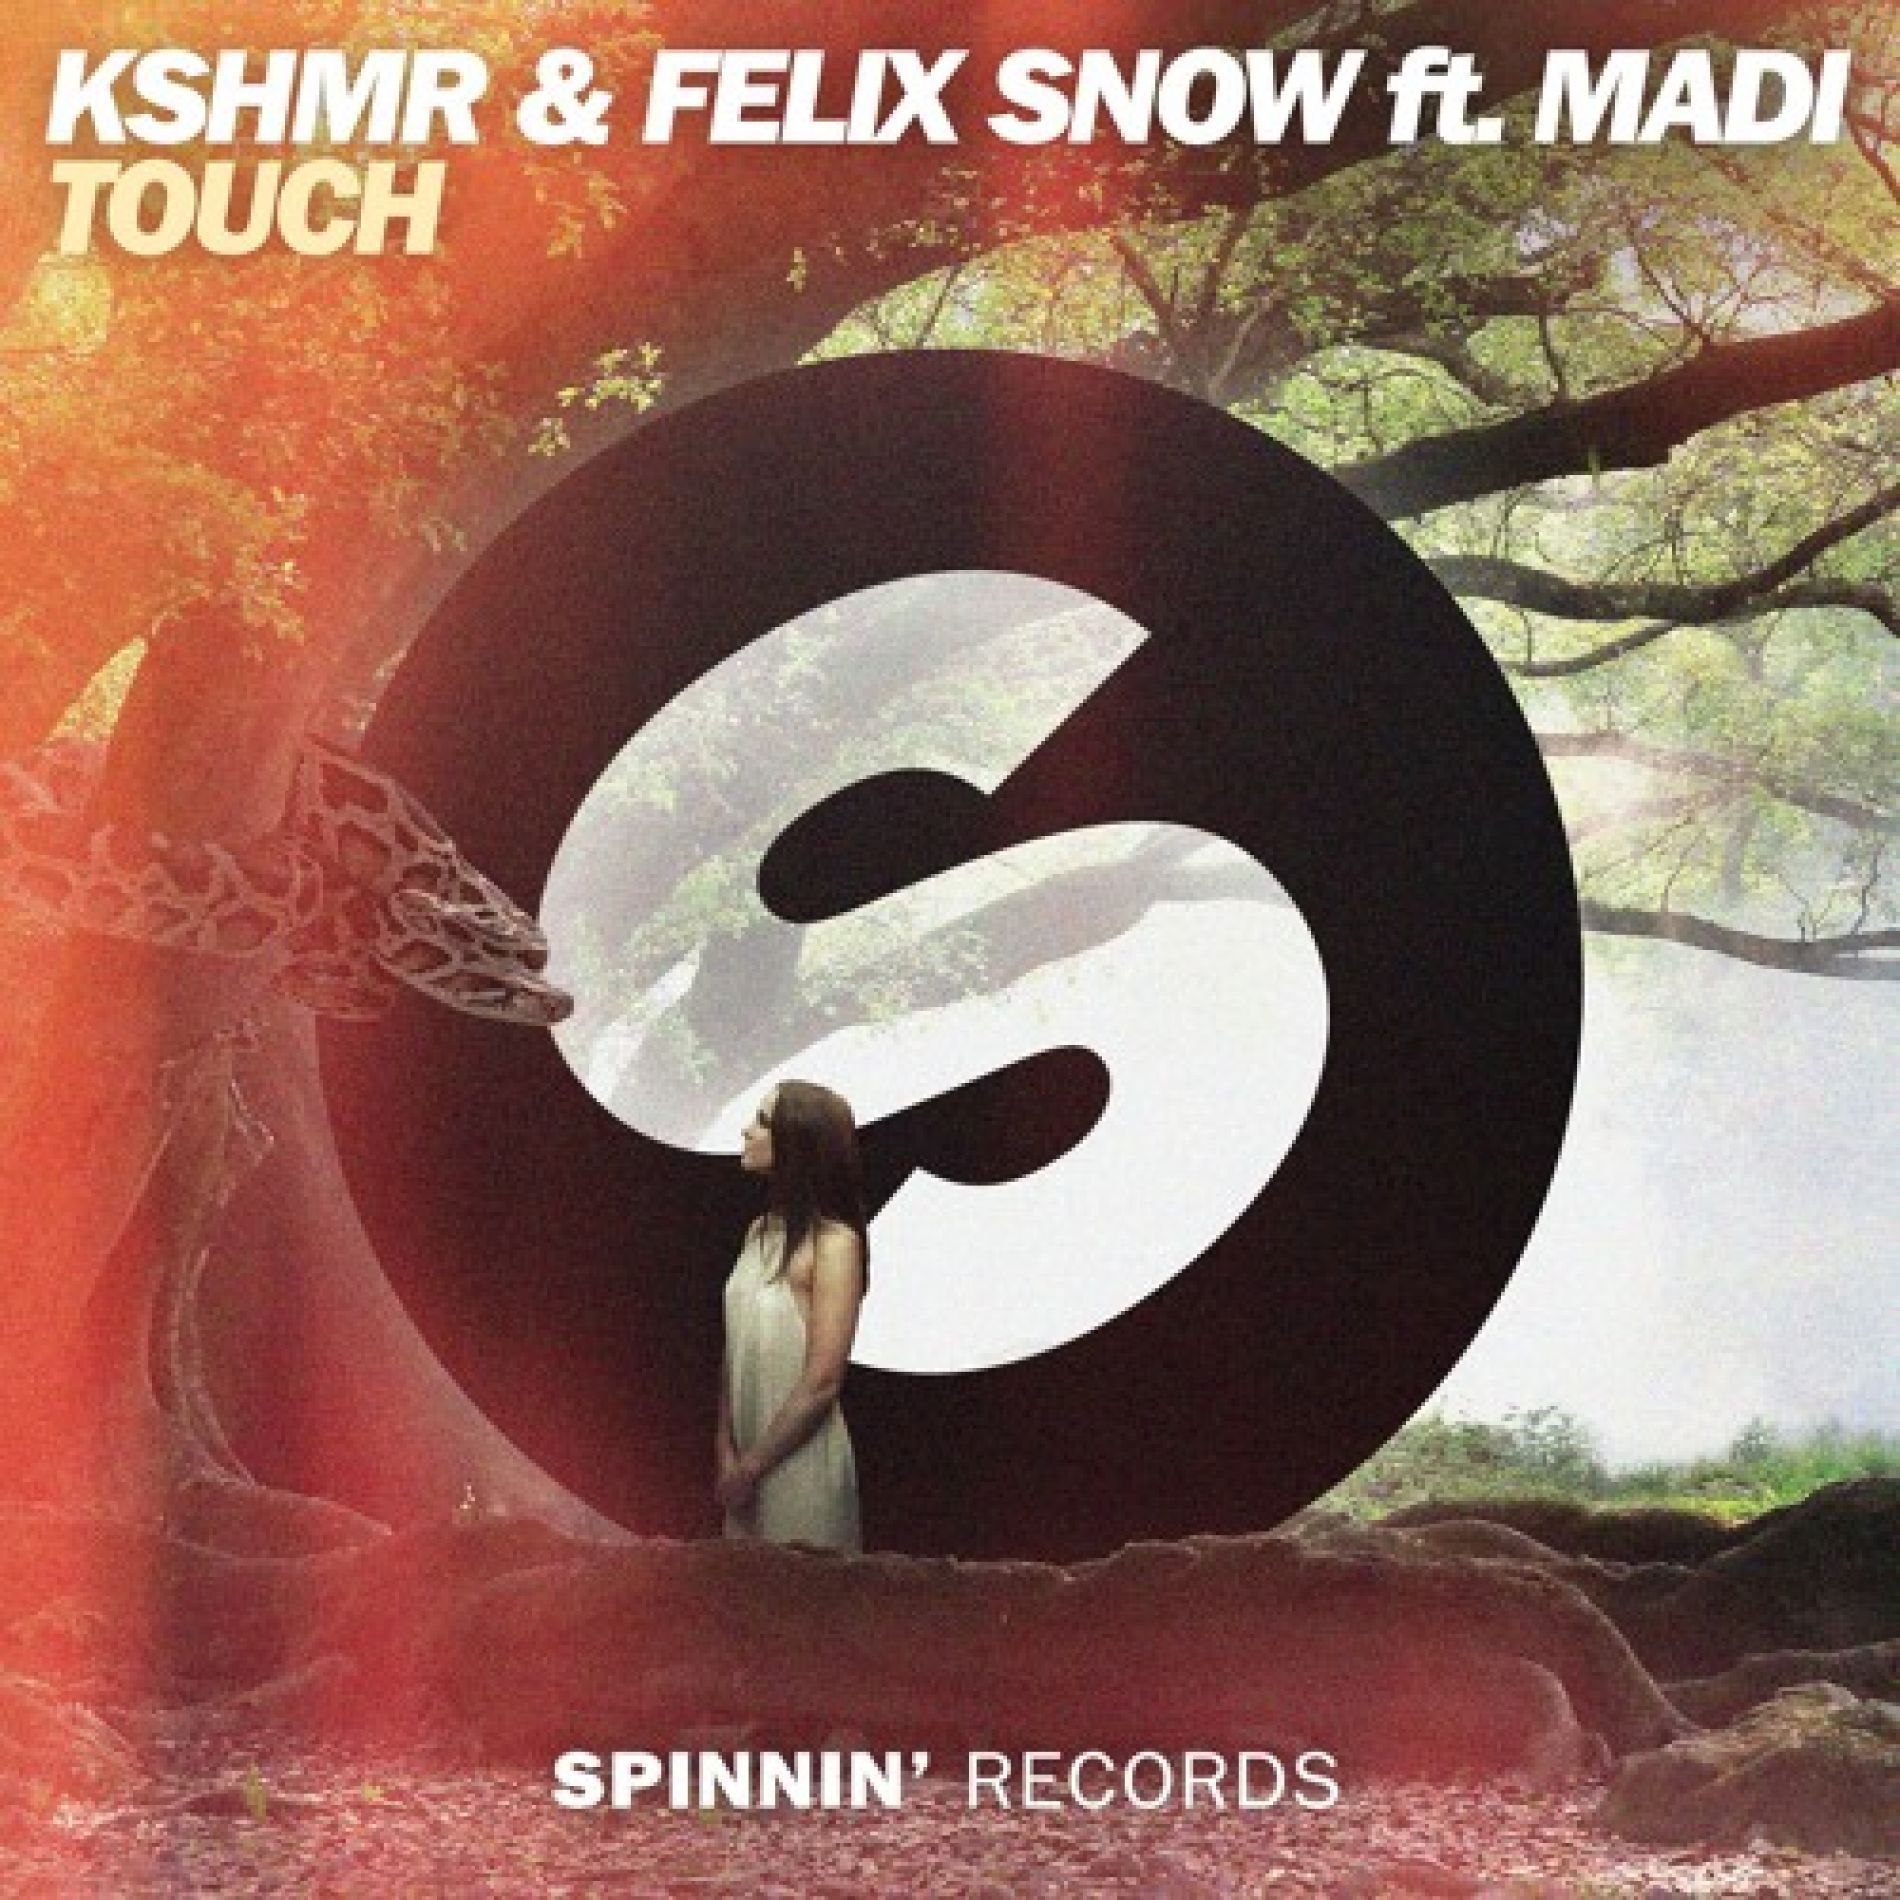 KSHMR & Felix Snow ft. Madi - Touch